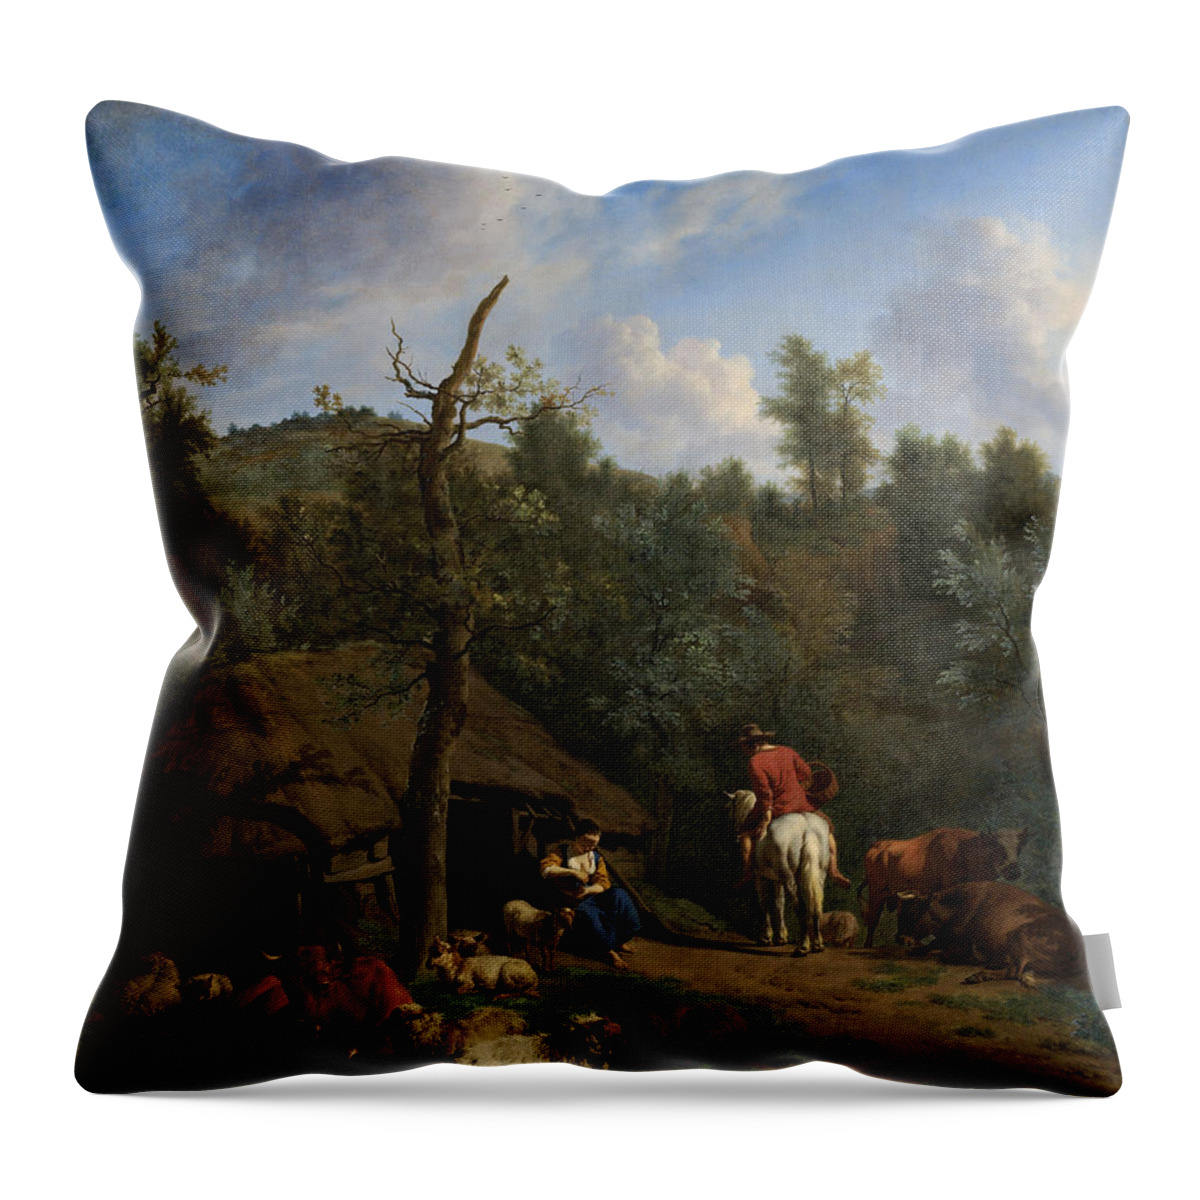 Van De Velde Throw Pillow featuring the painting The Hut by Adriaen van de Velde